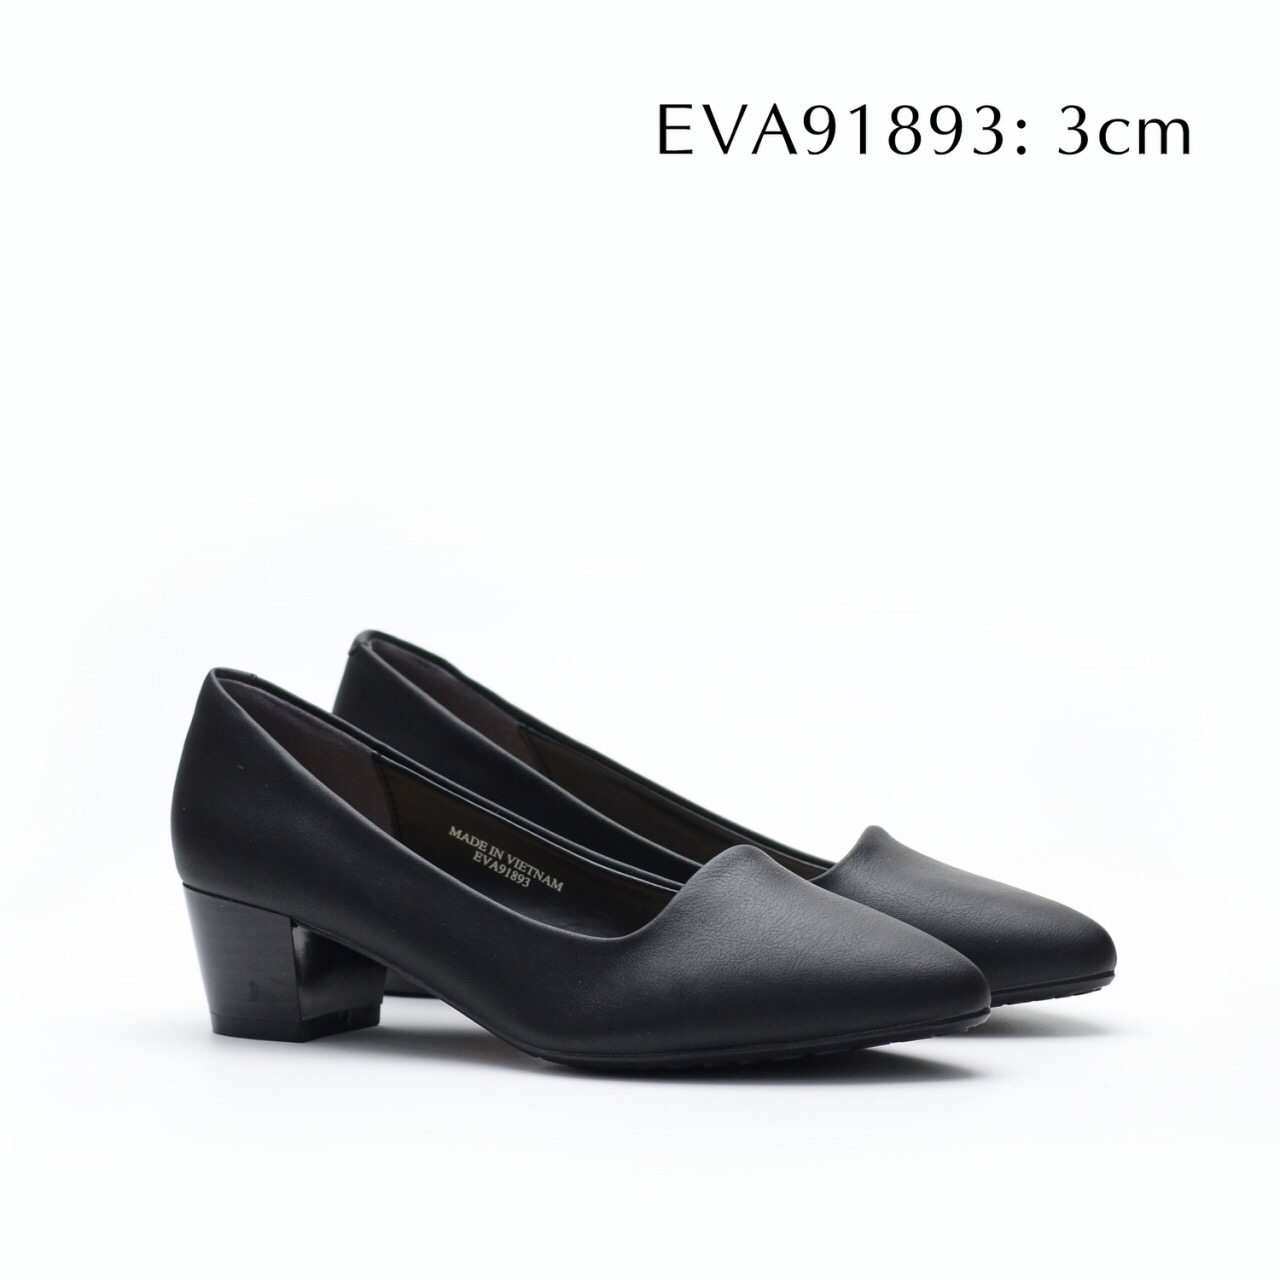 Giày công sở EVA91893 đế vuông da mềm đi cực êm mới